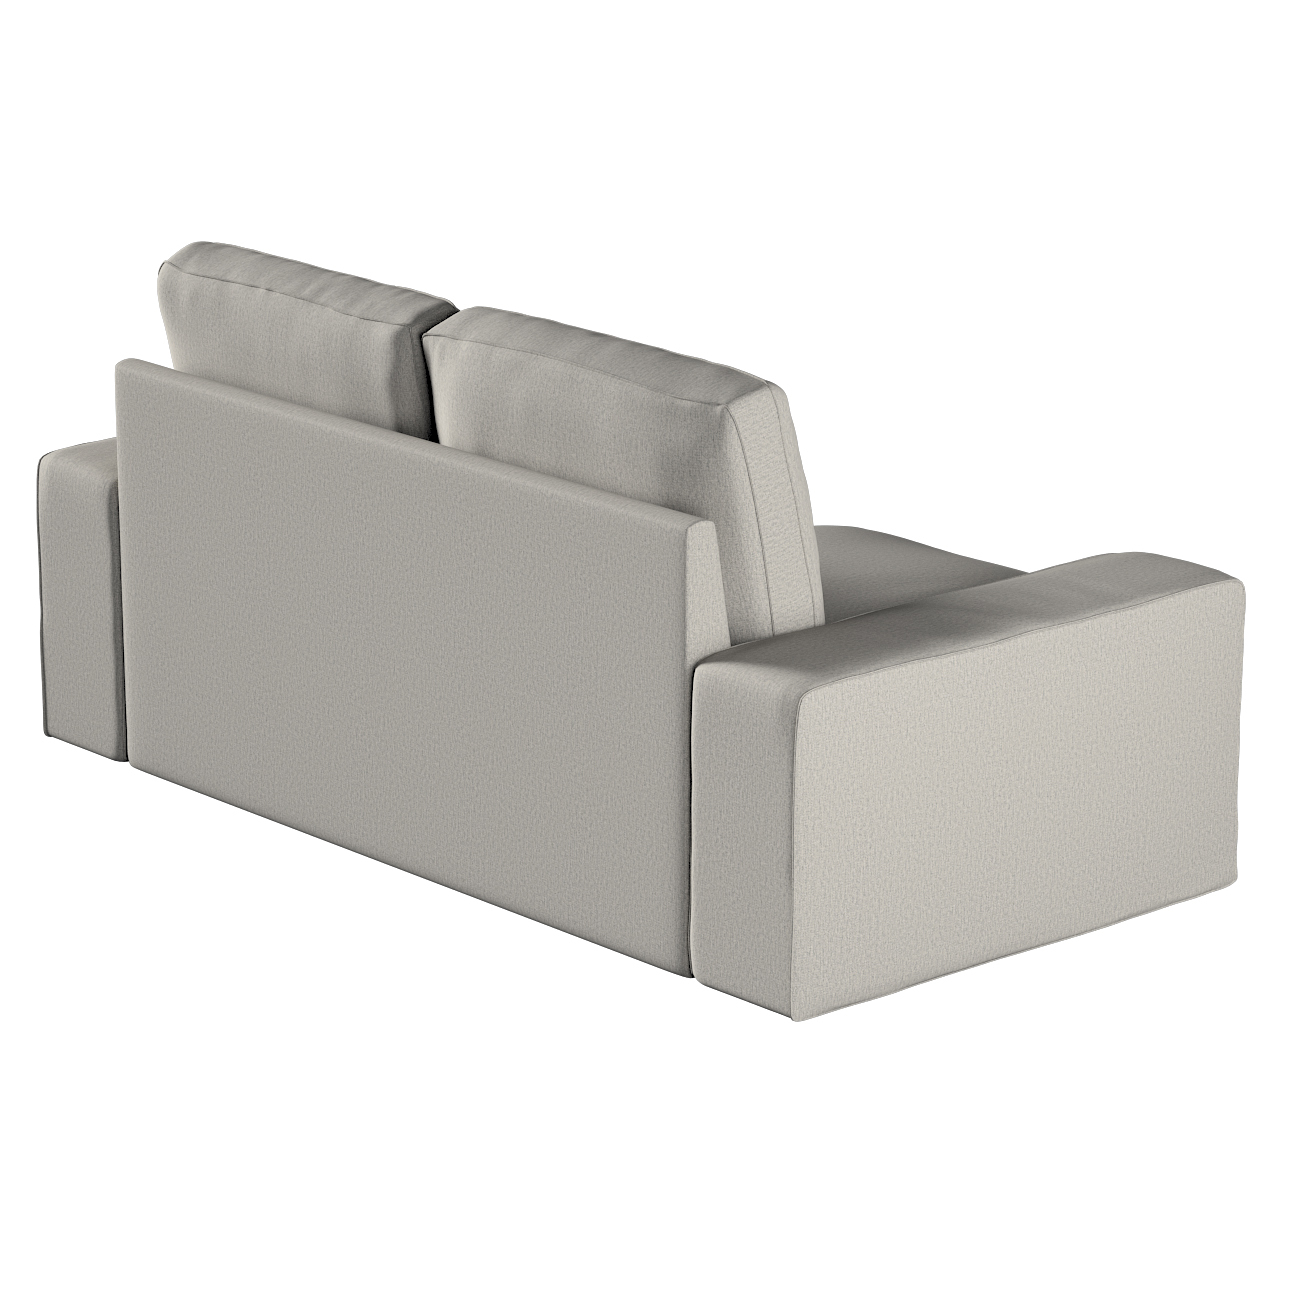 Bezug für Kivik 2-Sitzer Sofa, grau, Bezug für Sofa Kivik 2-Sitzer, Madrid günstig online kaufen